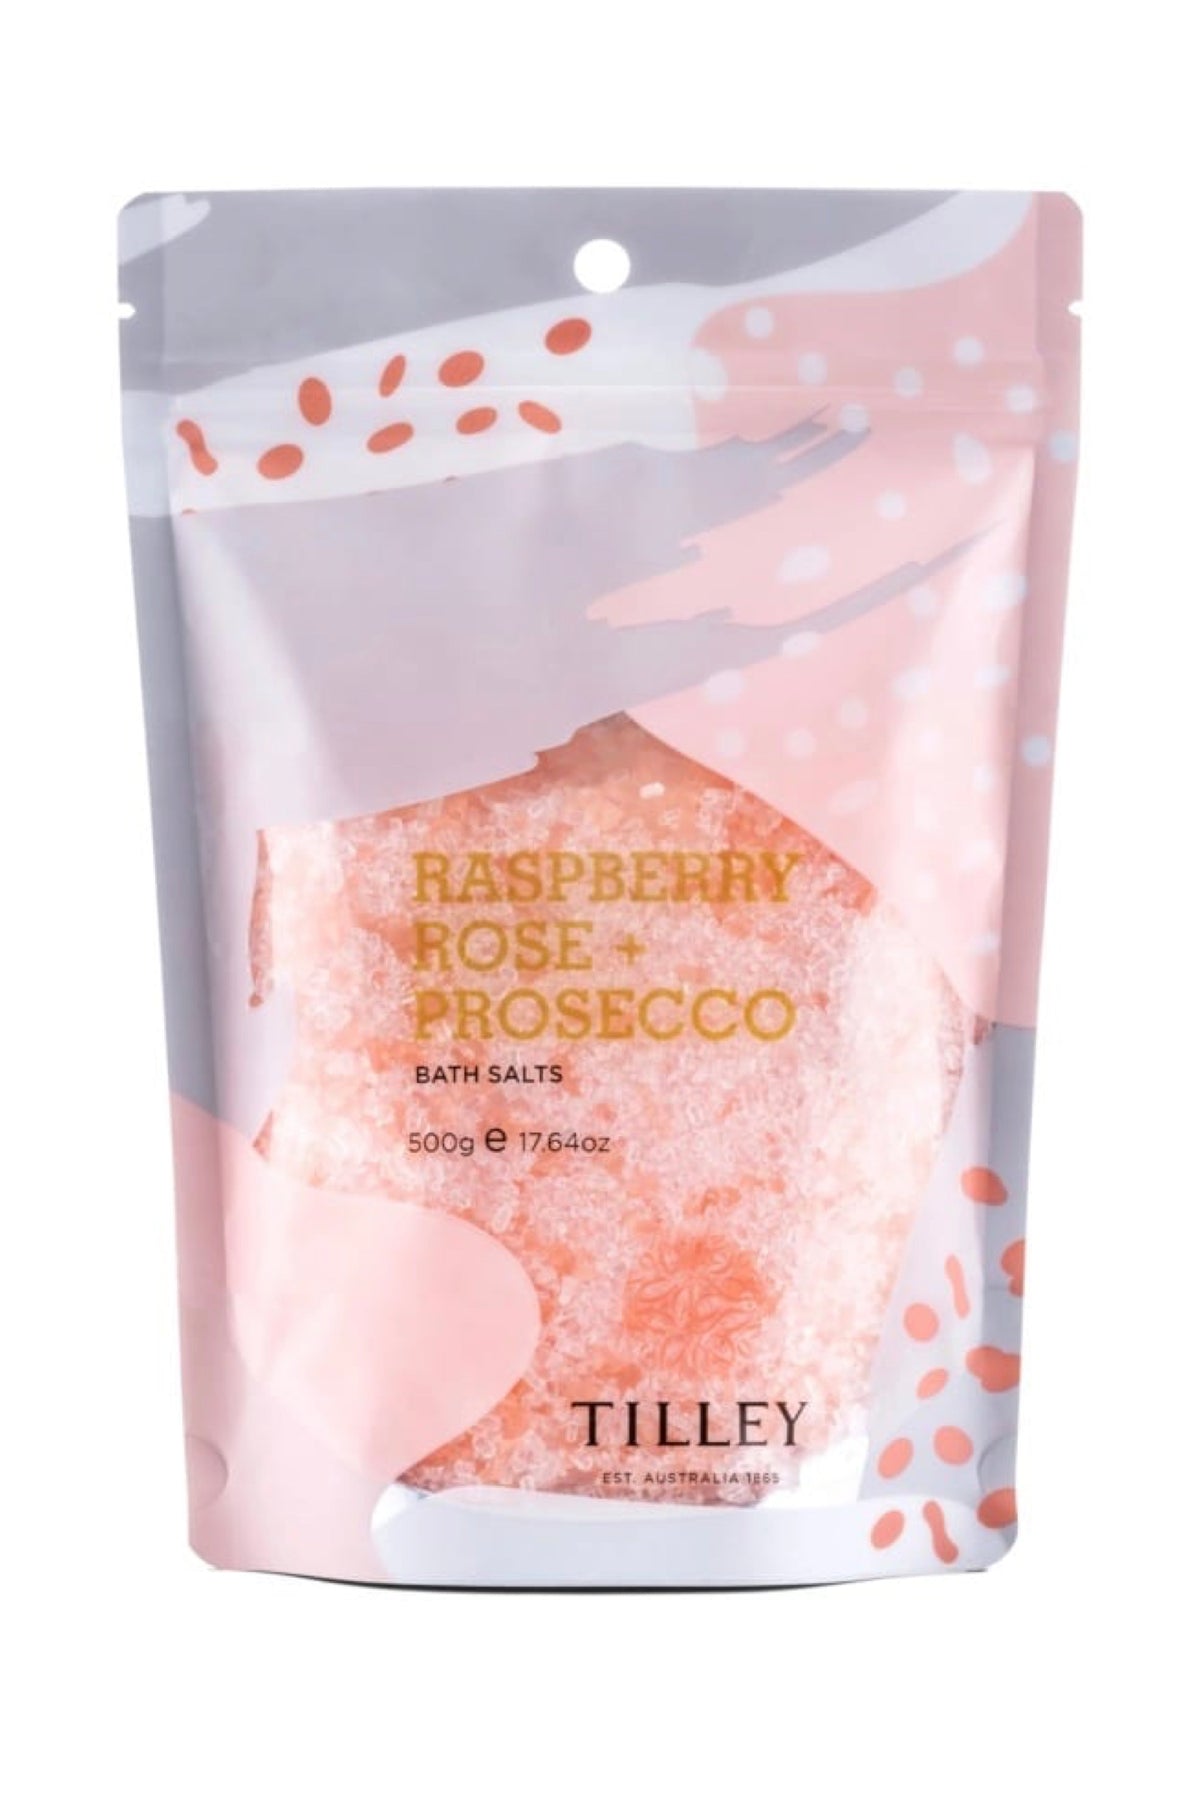 Raspberry, Rose & Prsecco Bath Salts